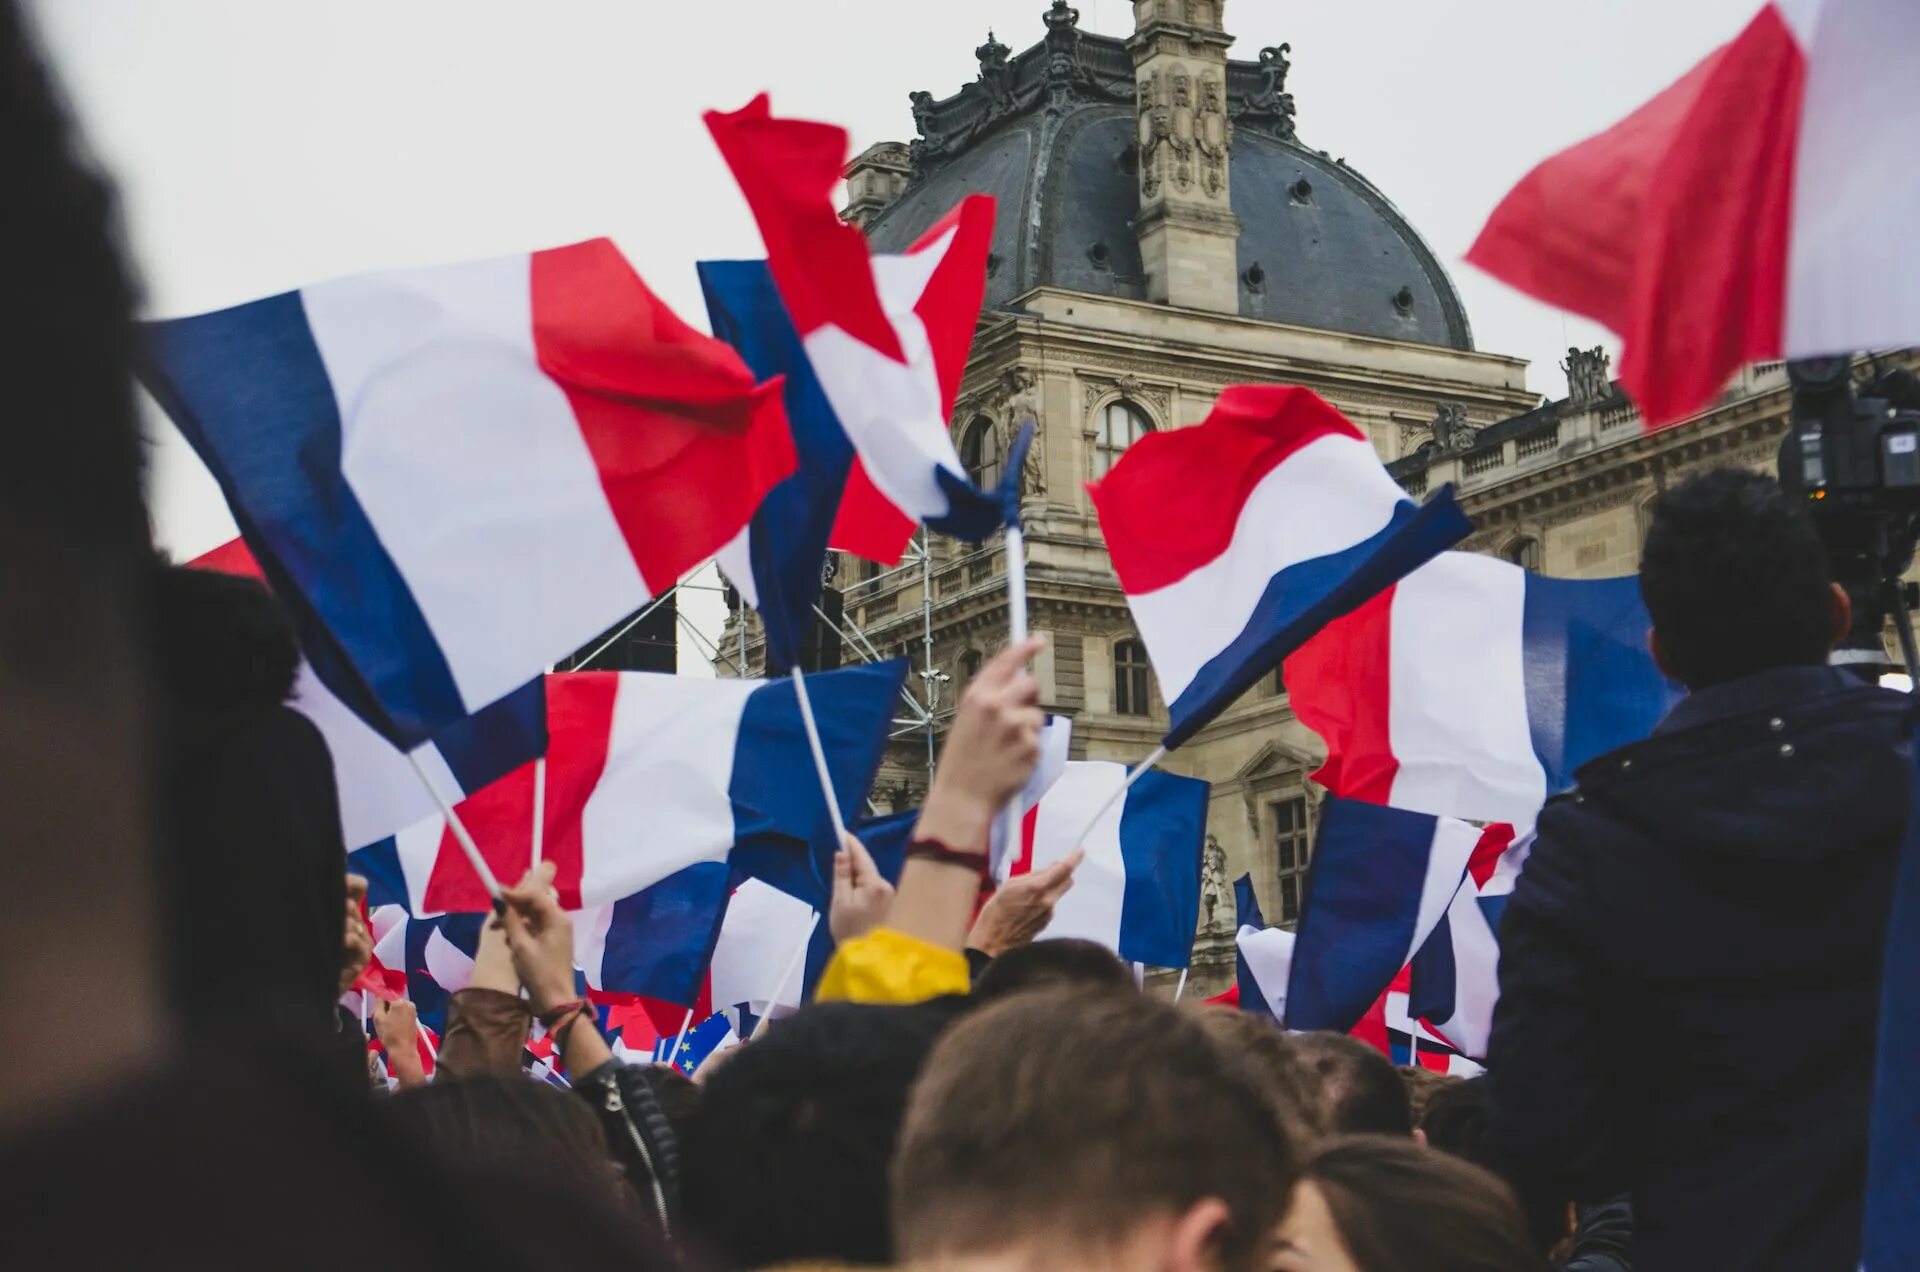 Сколько живет во франции. Франция и французы. Франция власть. Выборы во Франции. Правительство Франции.